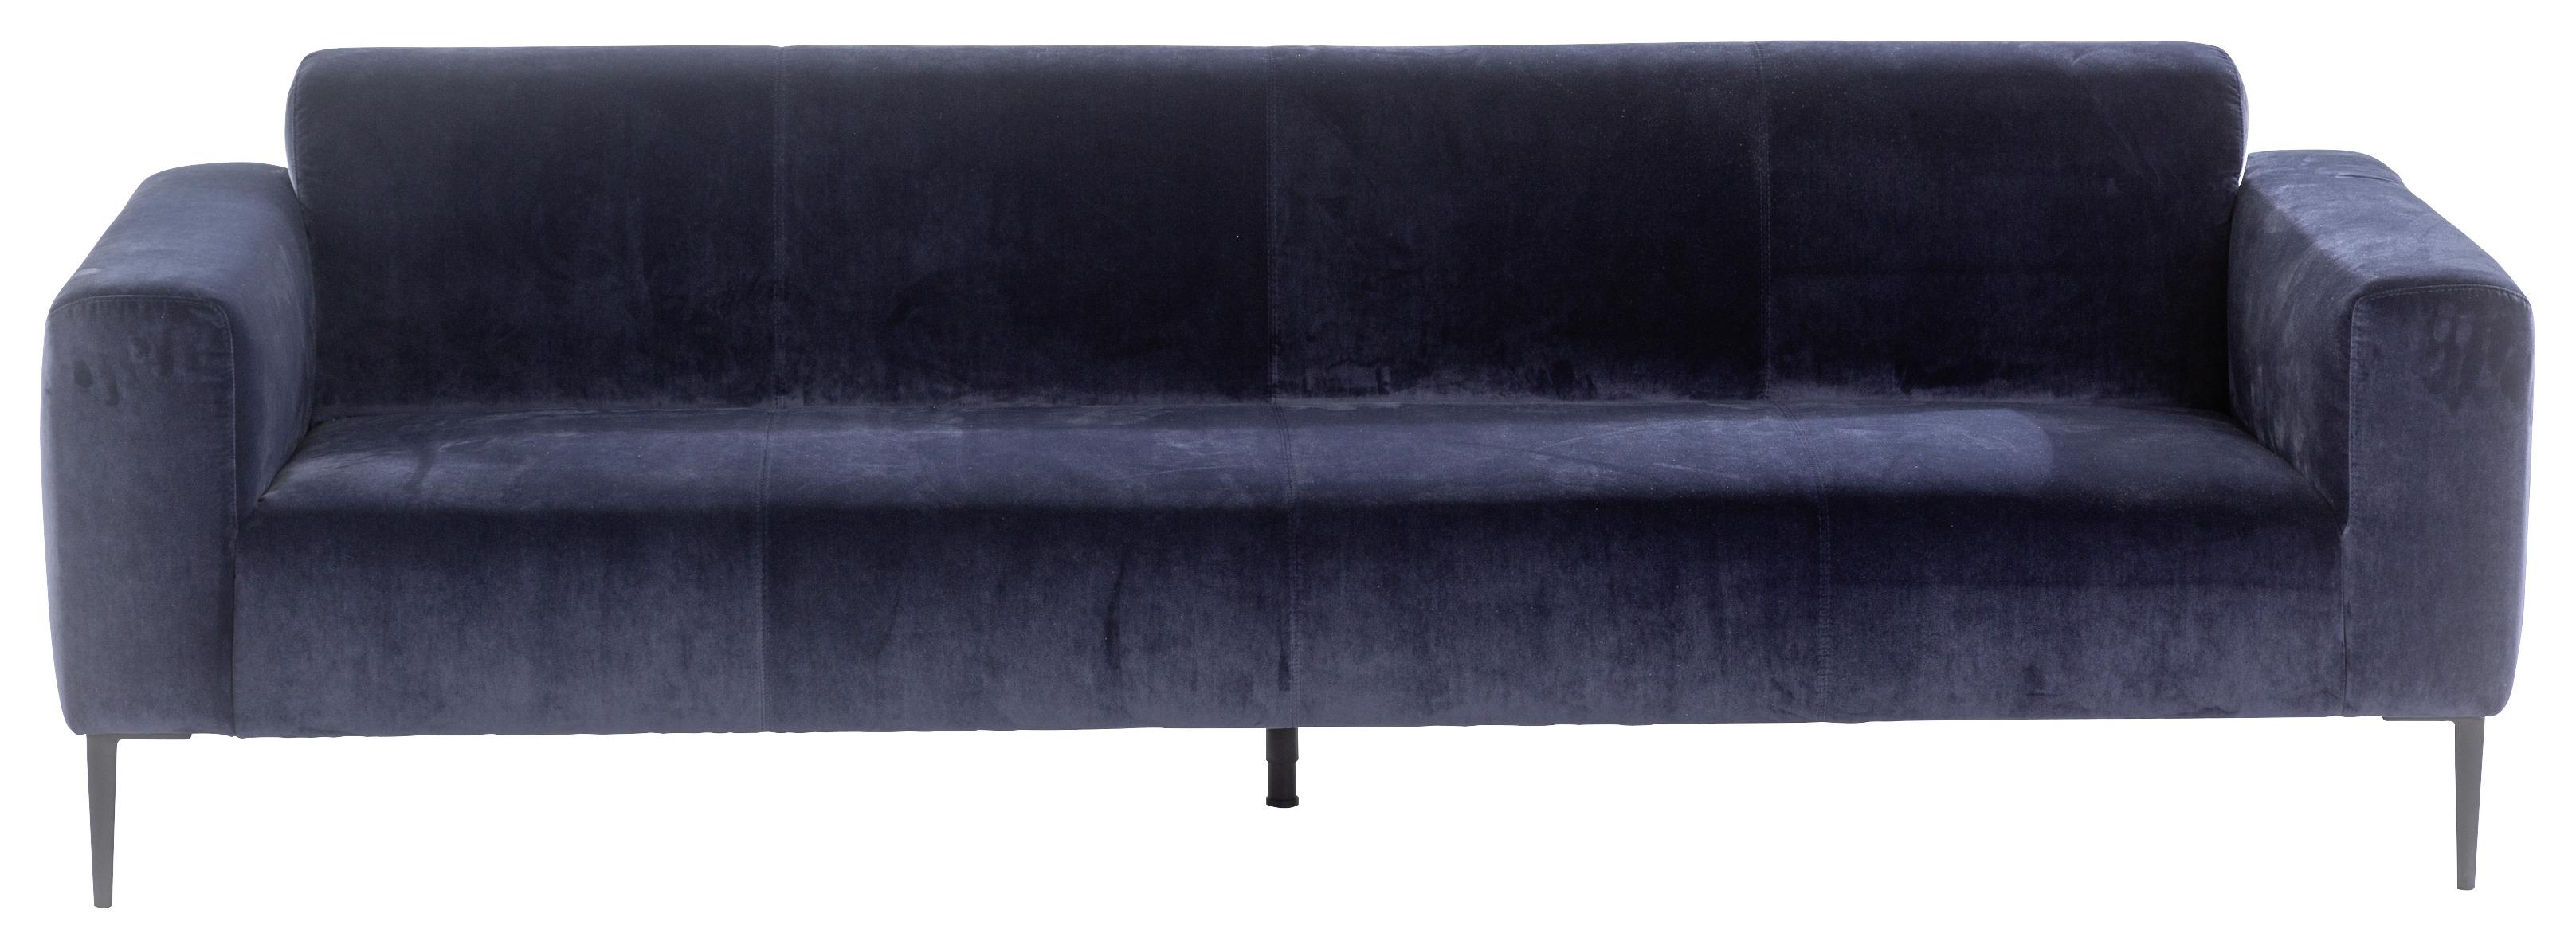 3-Sitzer-Sofa Nobility Rücken Echt Blau